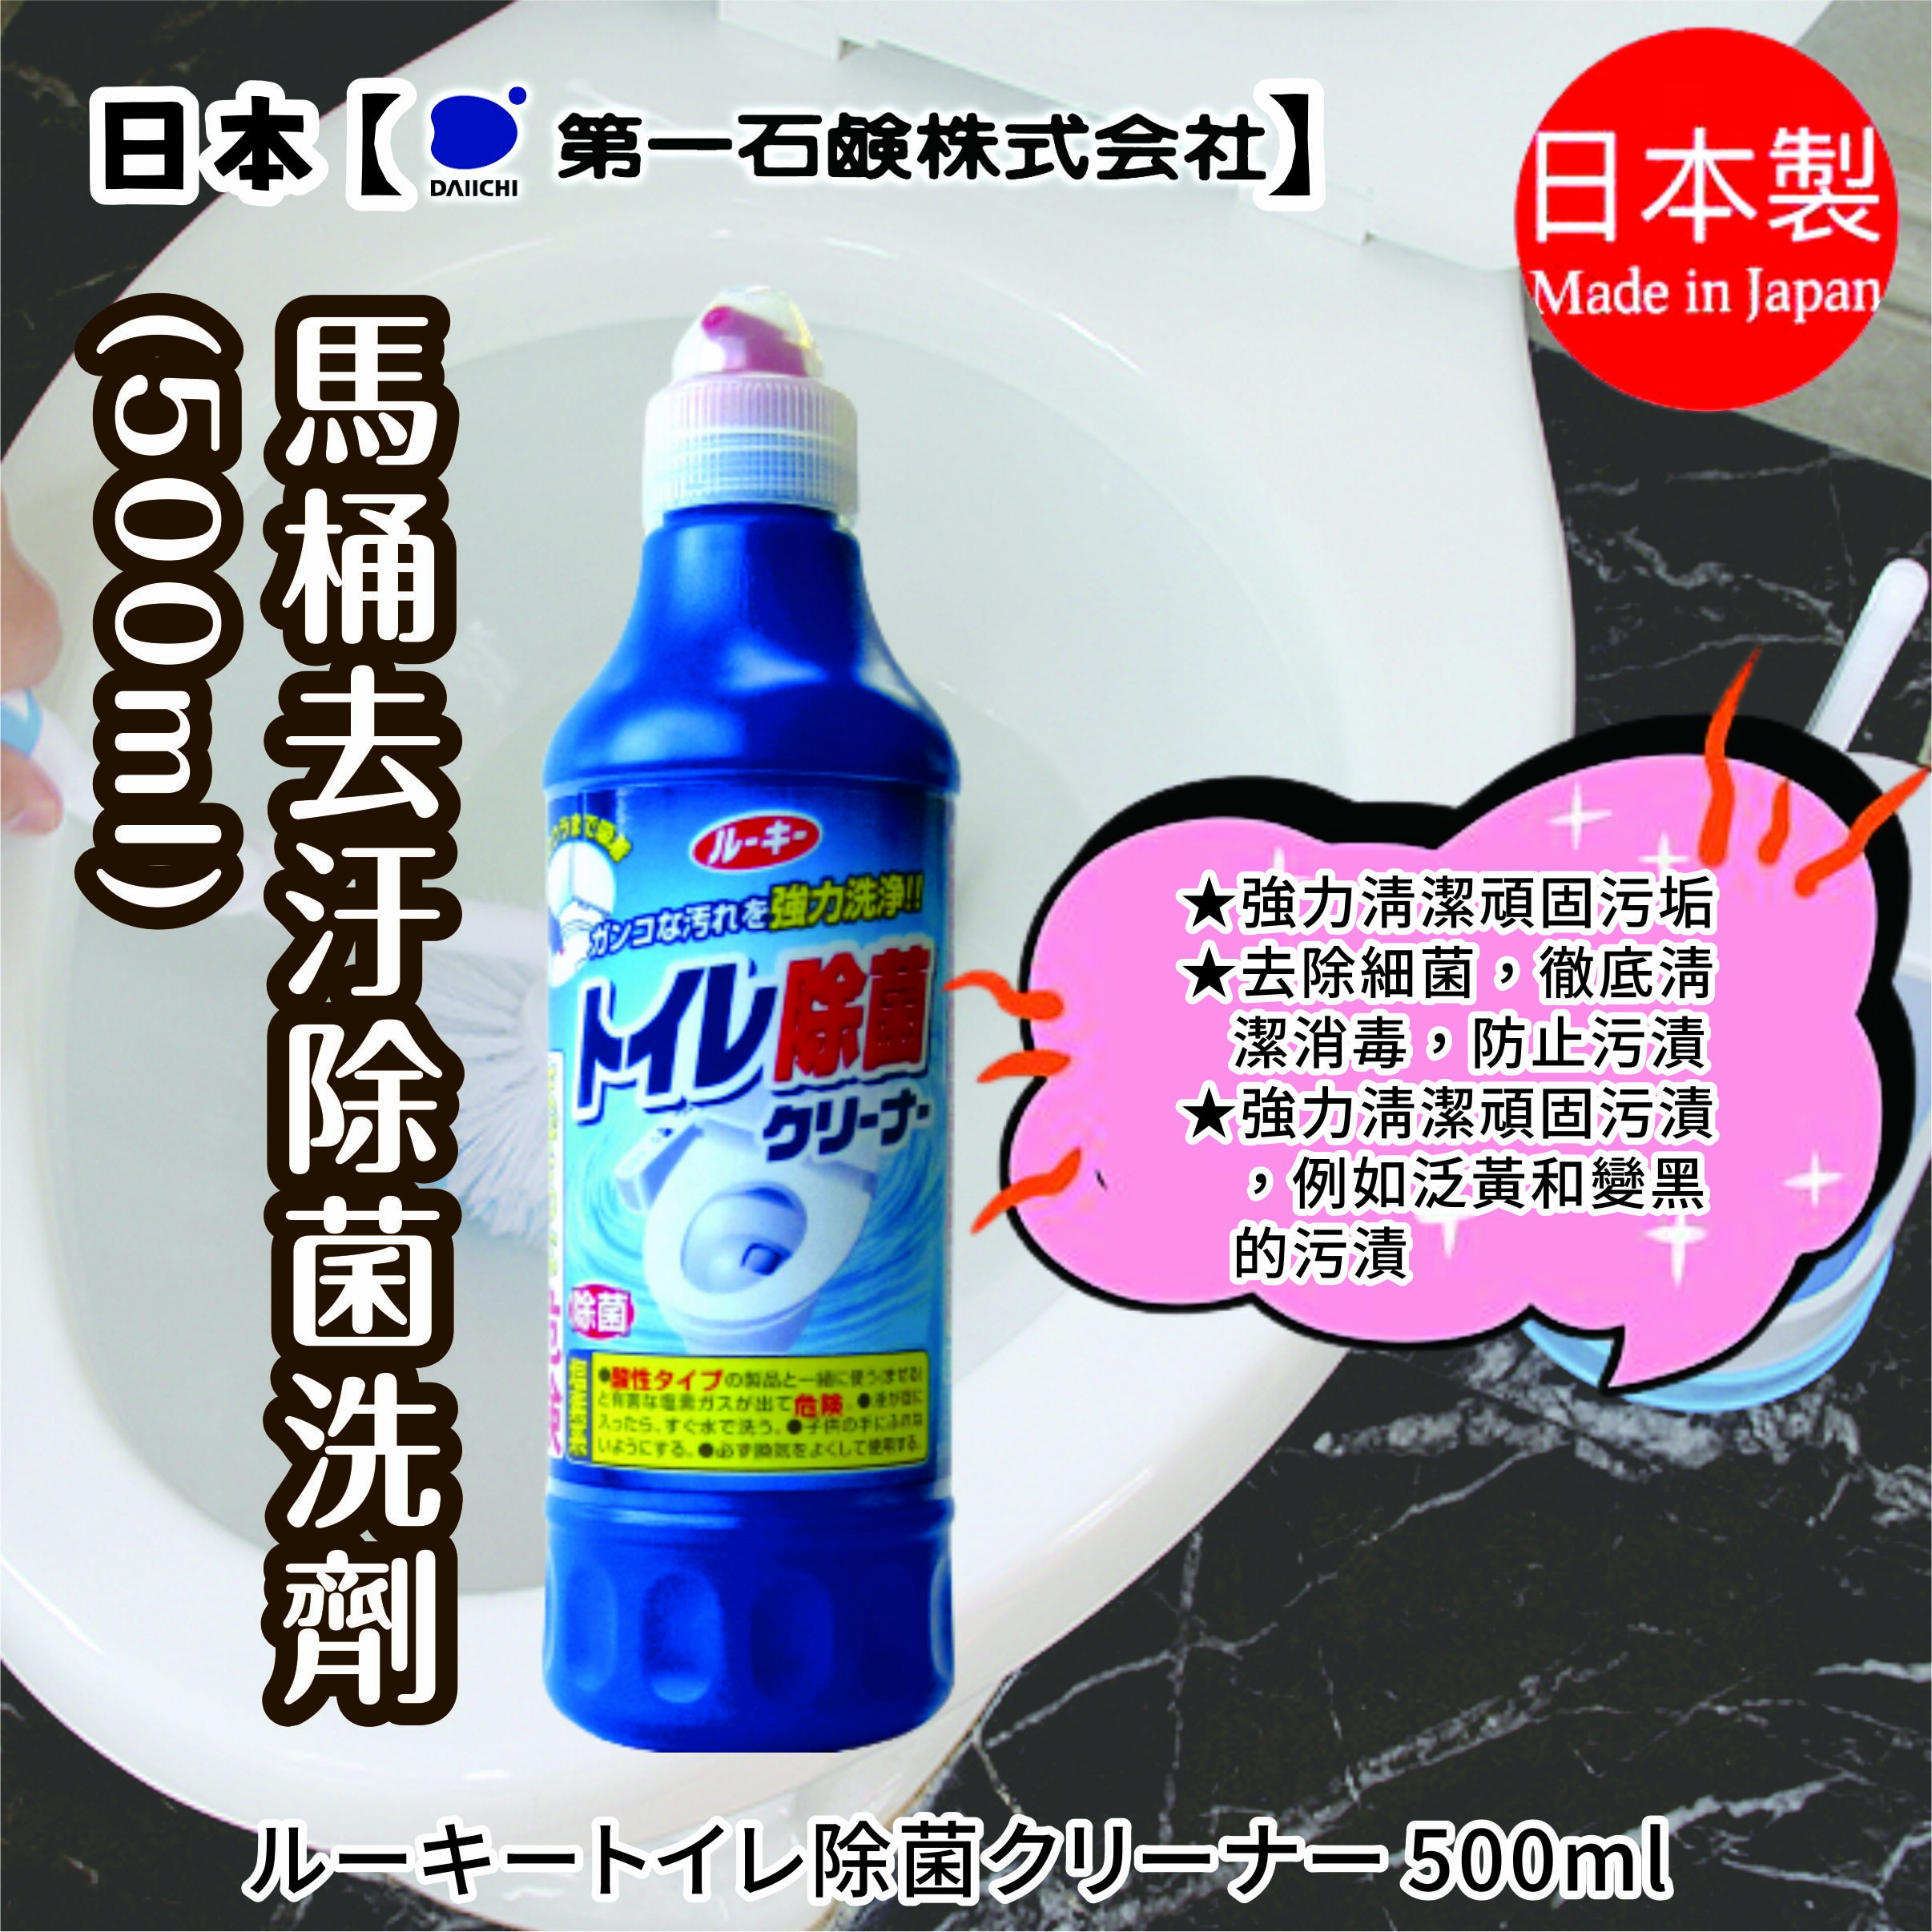 日本【第一石鹼】馬桶清潔劑=超商最多6瓶=